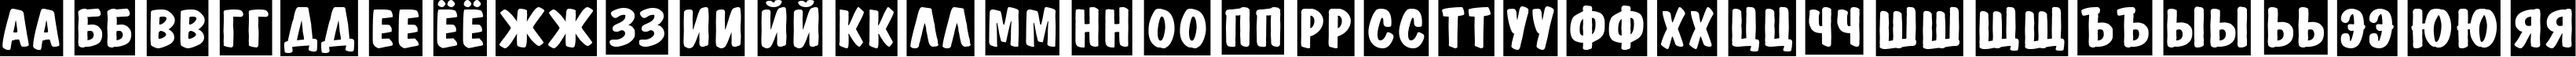 Пример написания русского алфавита шрифтом a_DomInoTitulSl Bold